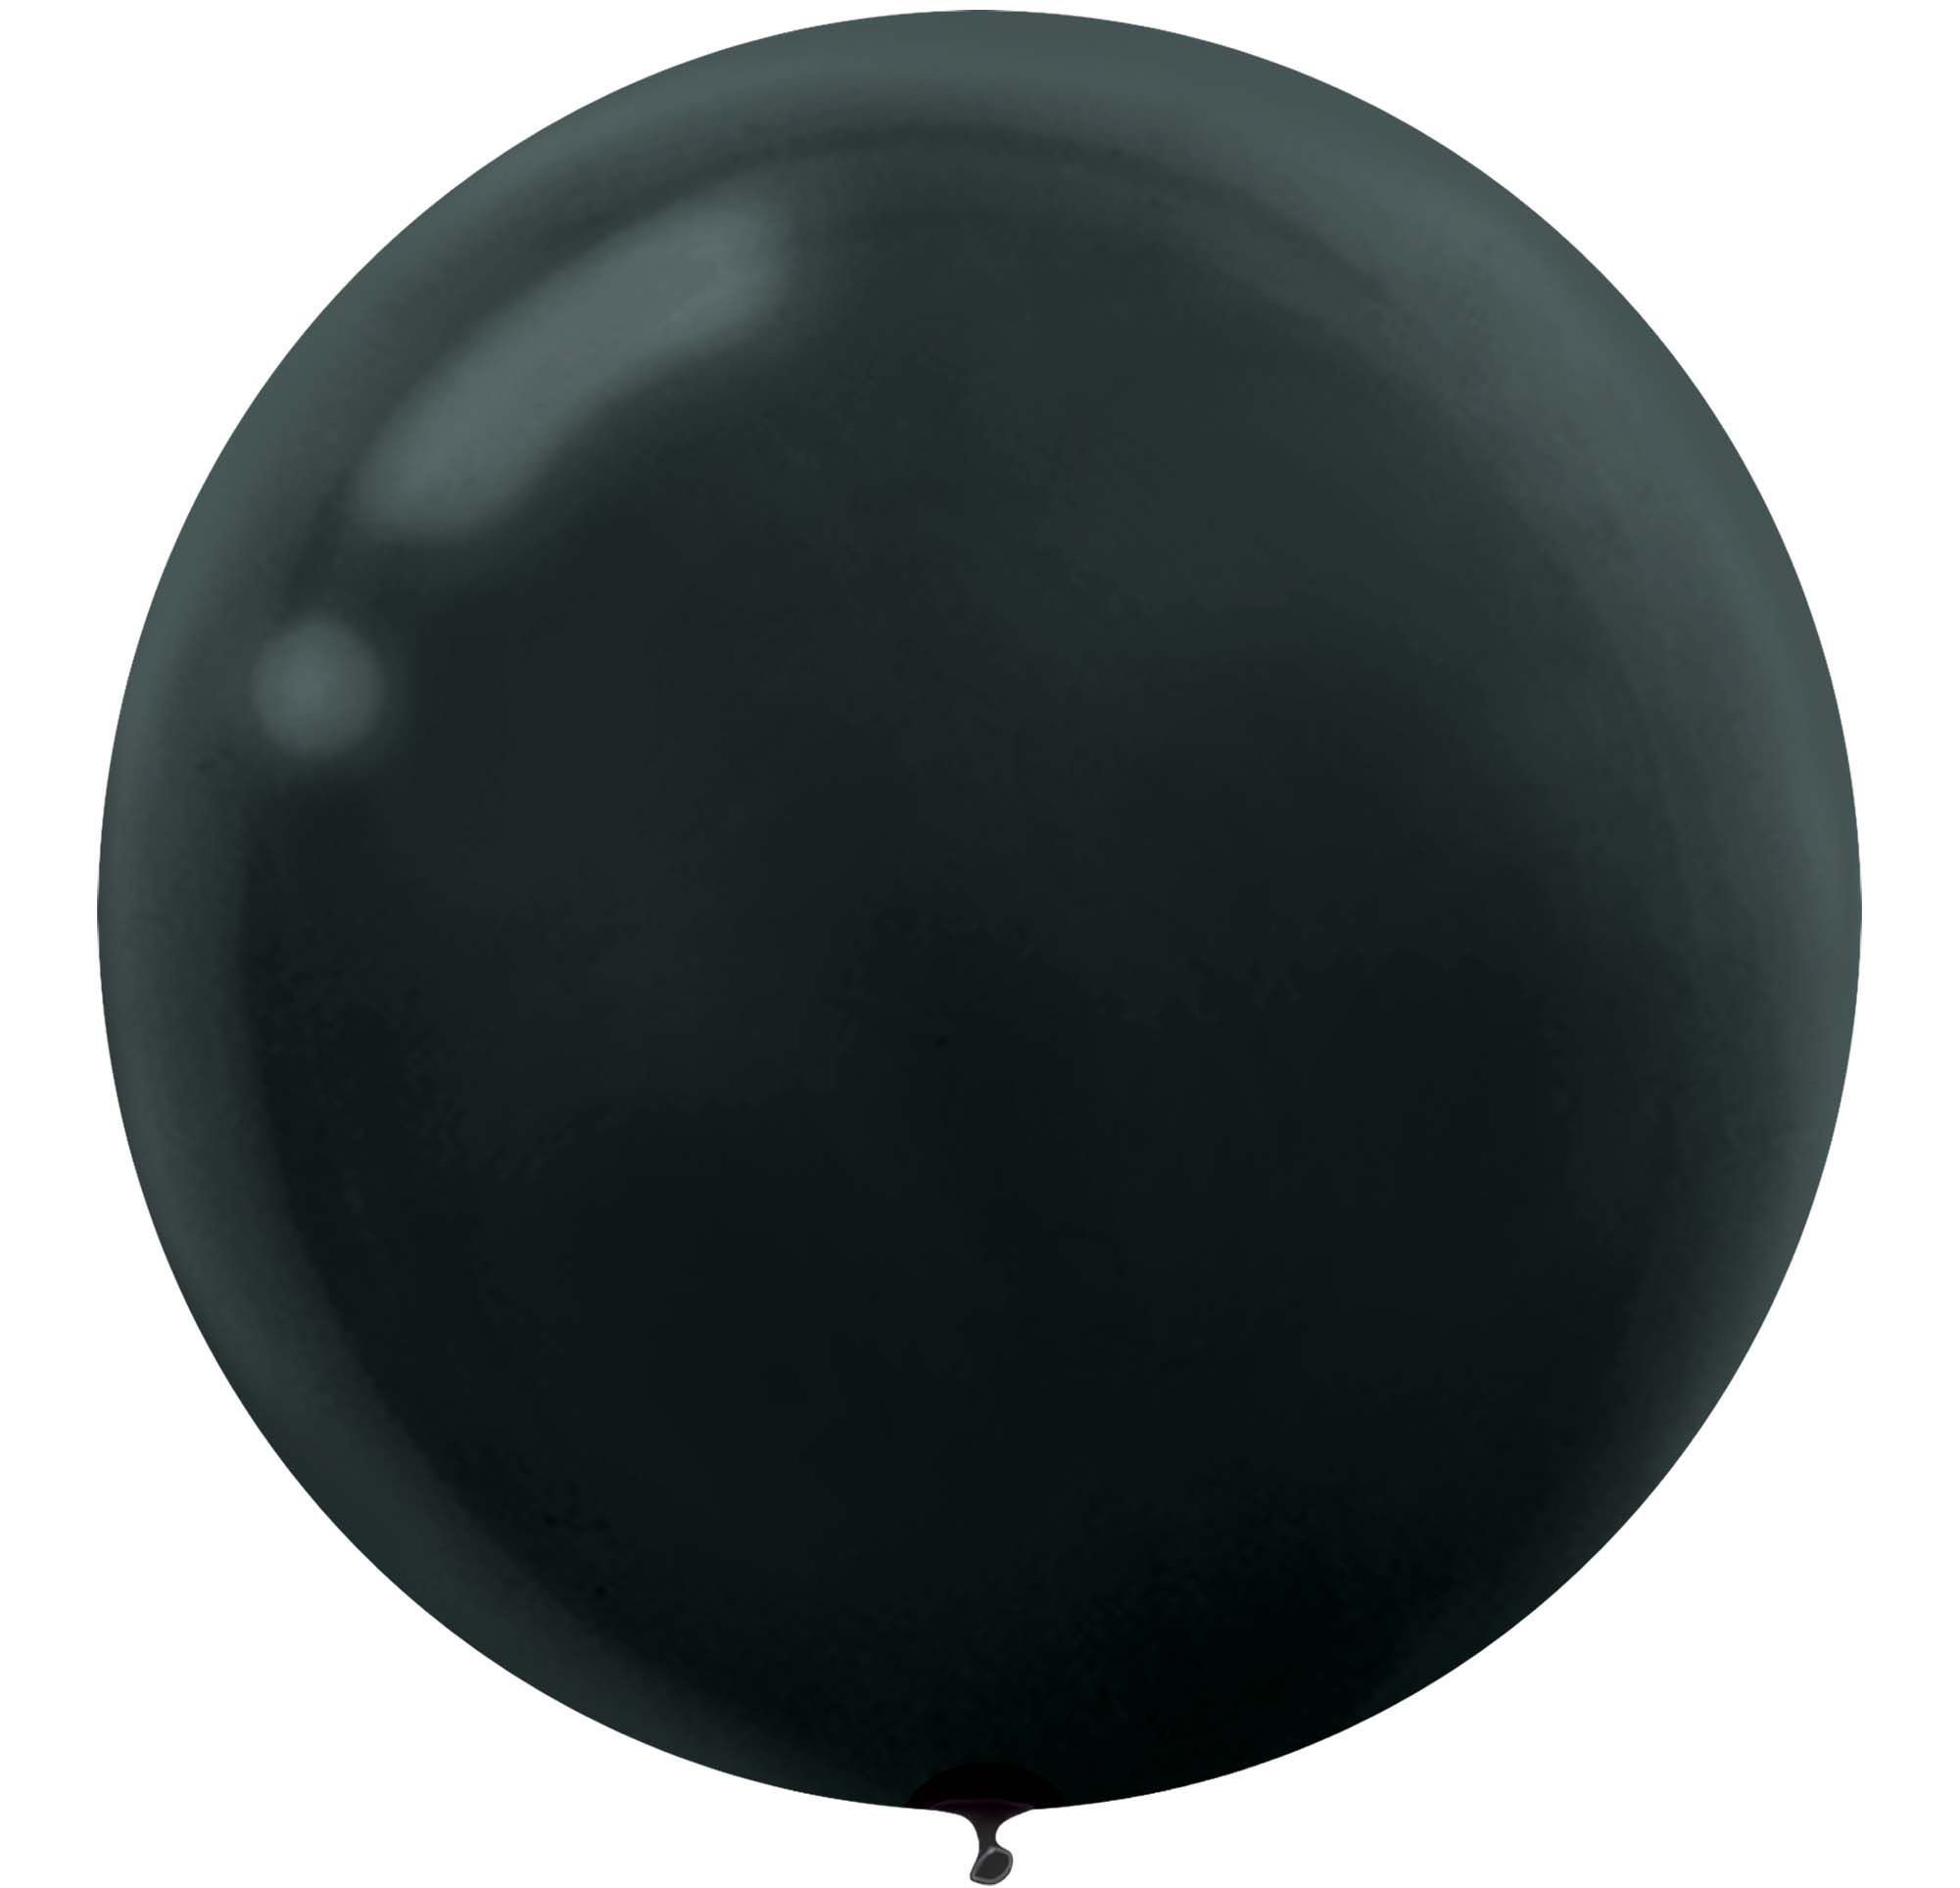 12 Ballons noir / or confetti / or / bonne année - L'Entrepôt de la Fête